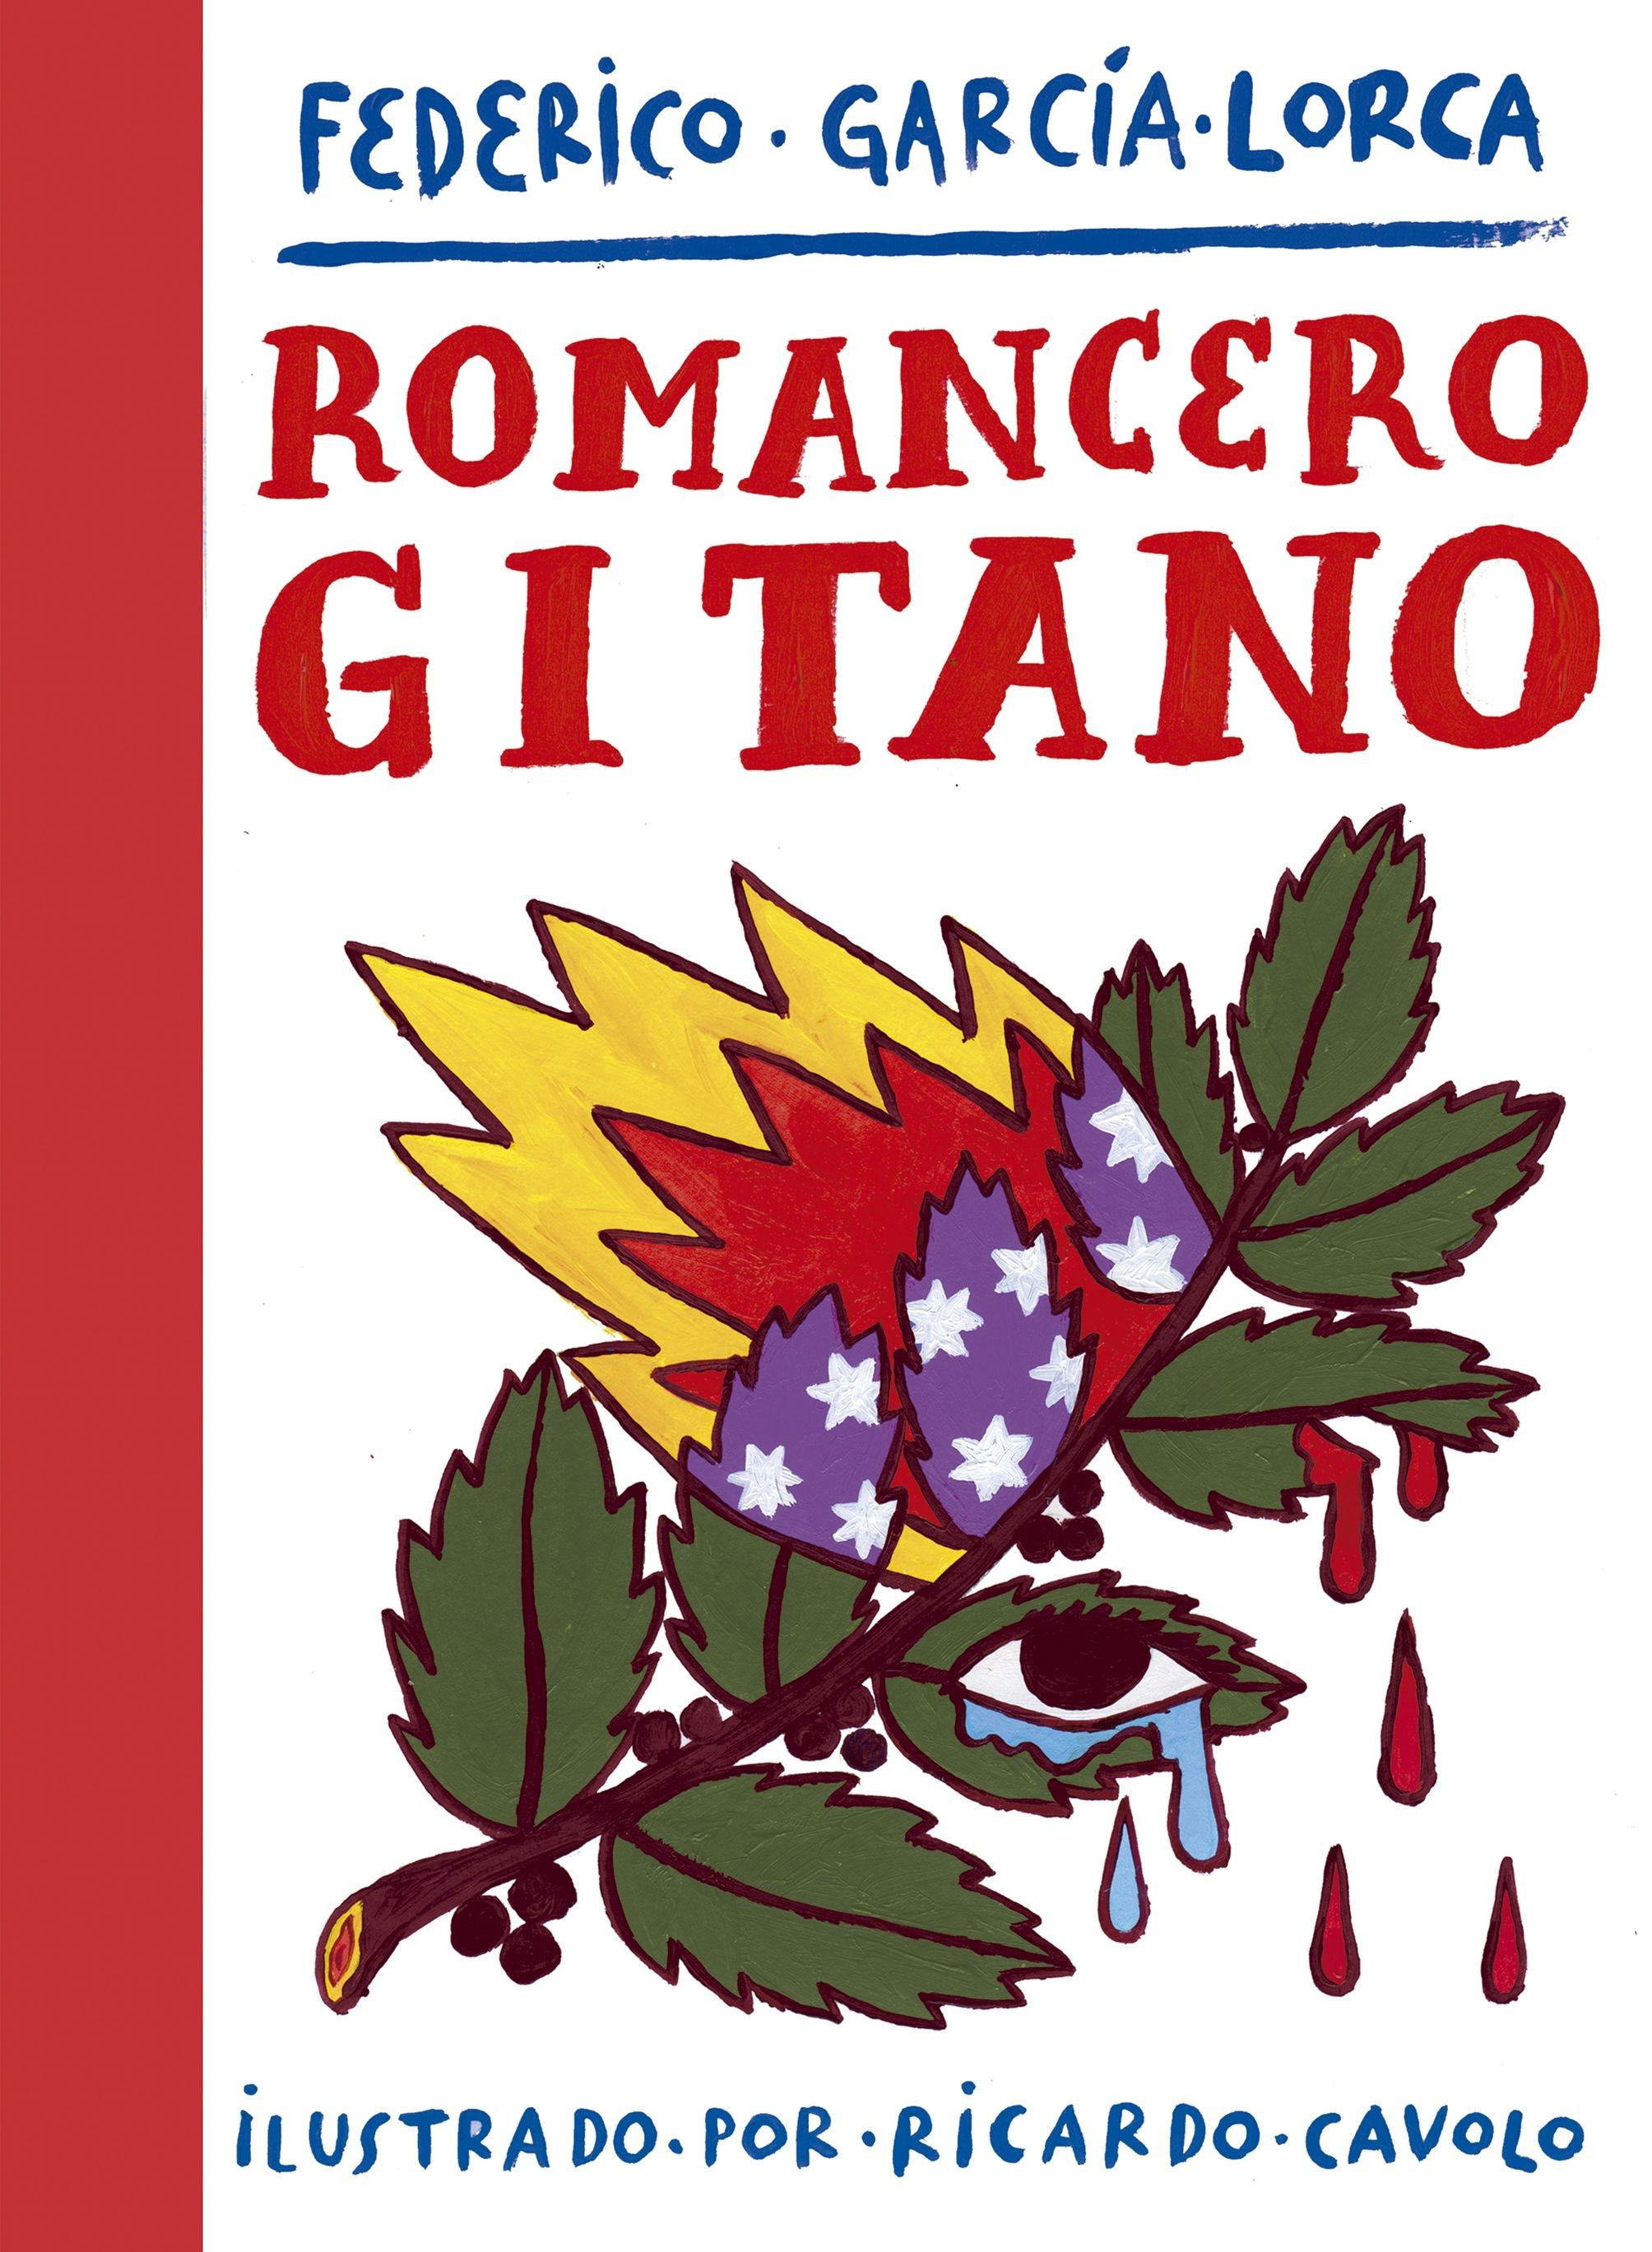 Romancero Gitano "Ilustrado por Ricardo Cavolo". 